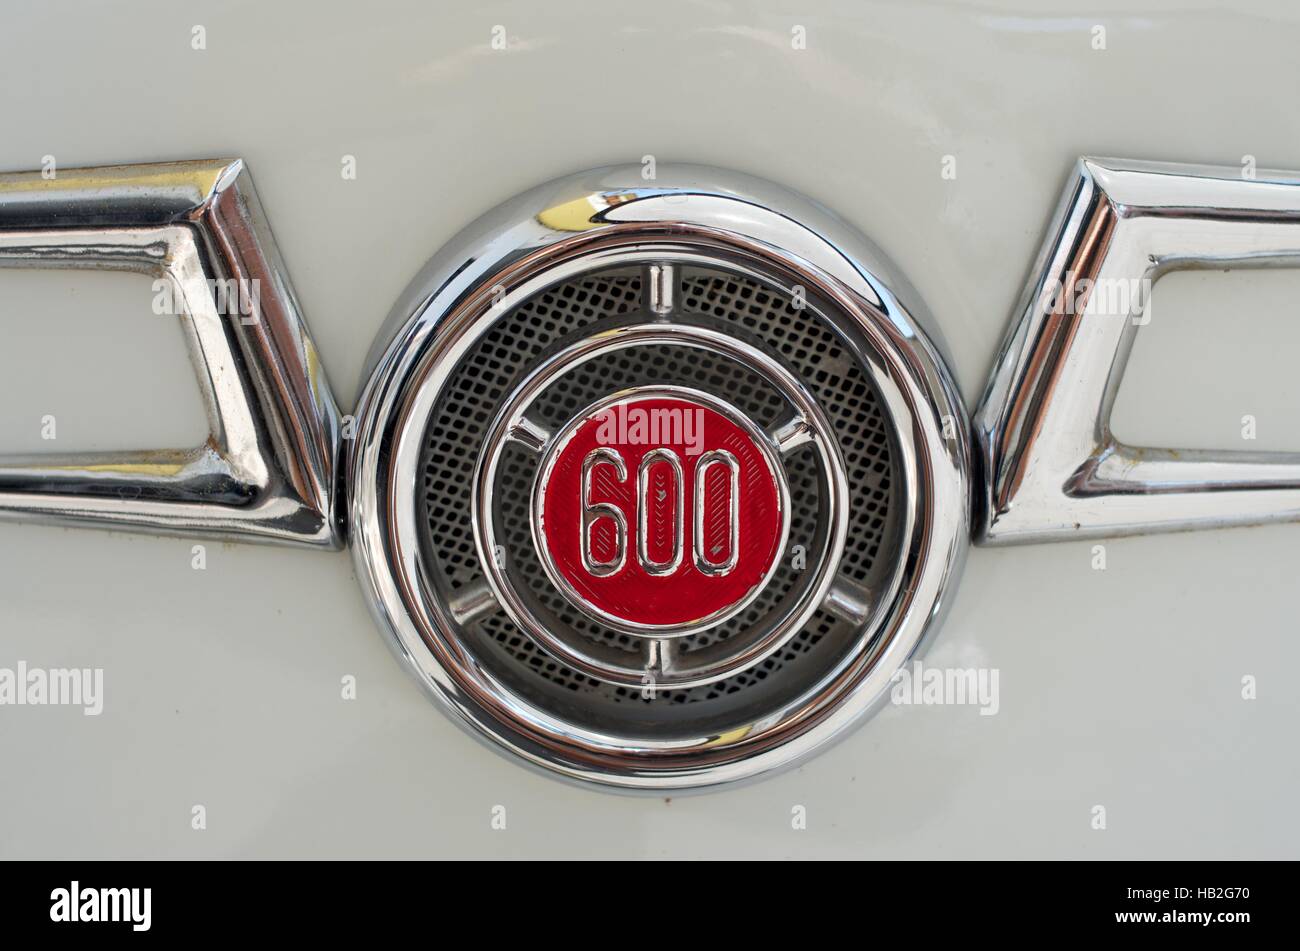 El clásico inolvidable: Seat 600 - Icono de la historia 